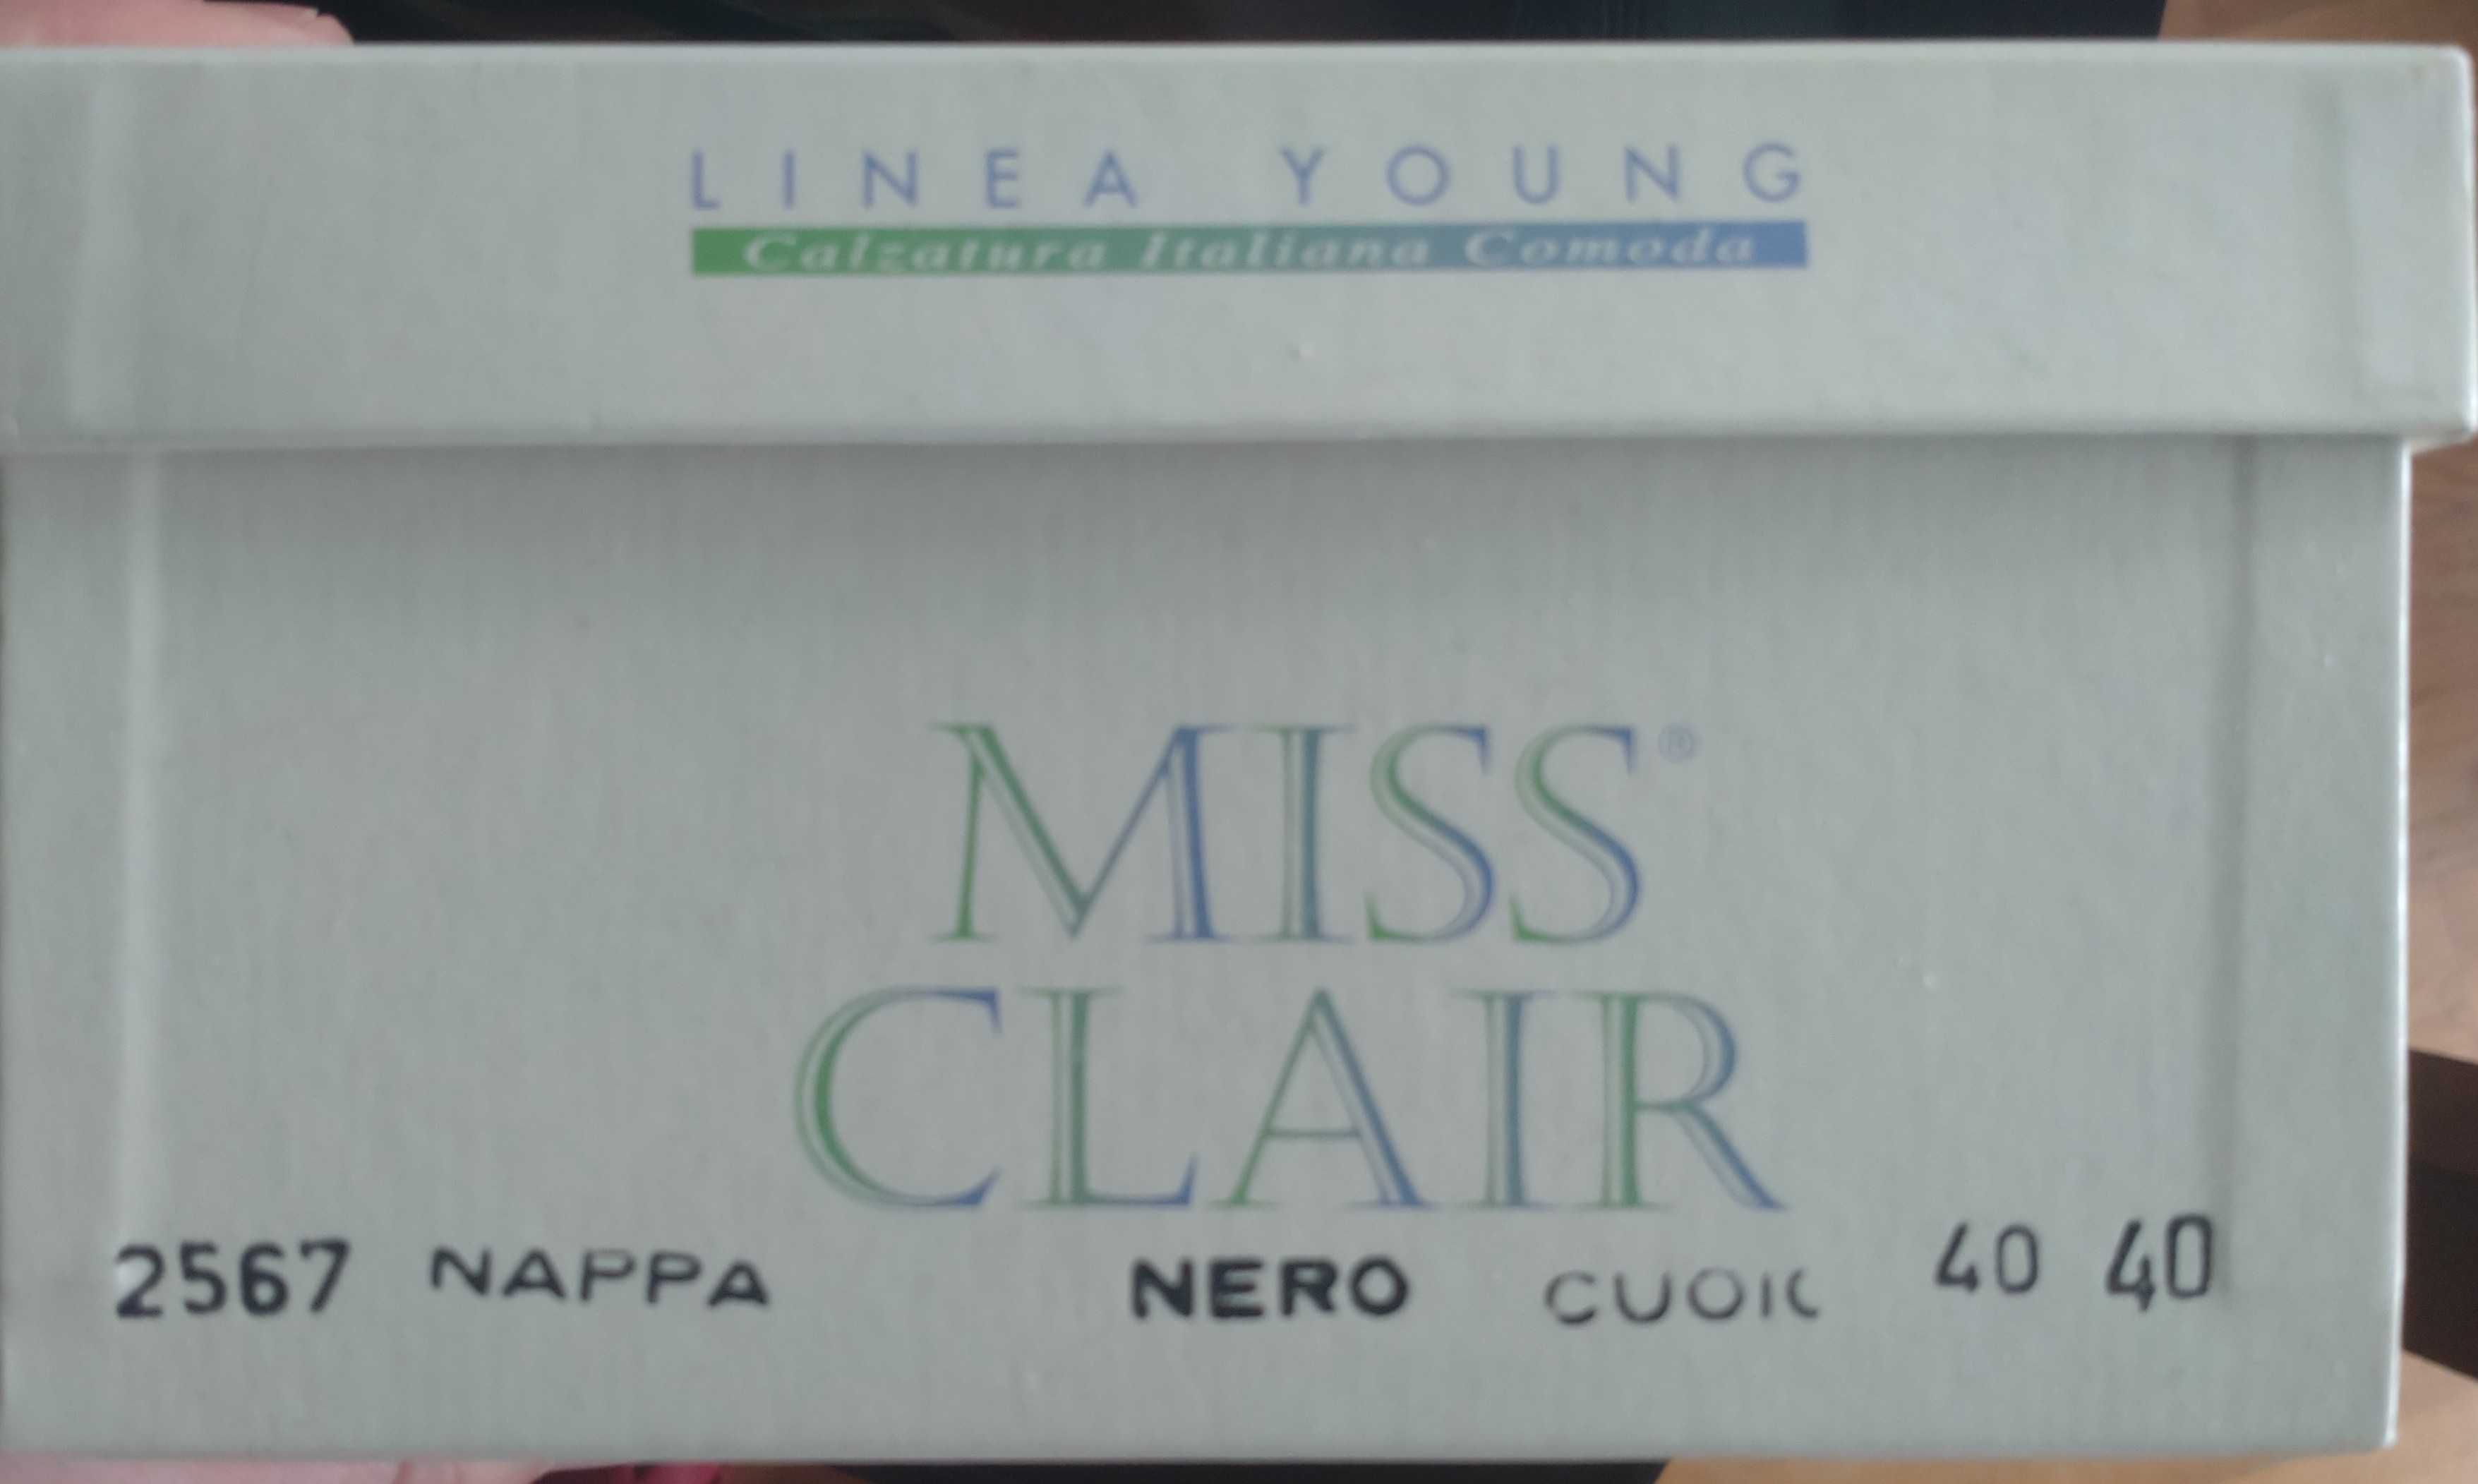 Czółenka Linea Young Miss Clair, włoskie skórzane, bez pięty-rozm. 40